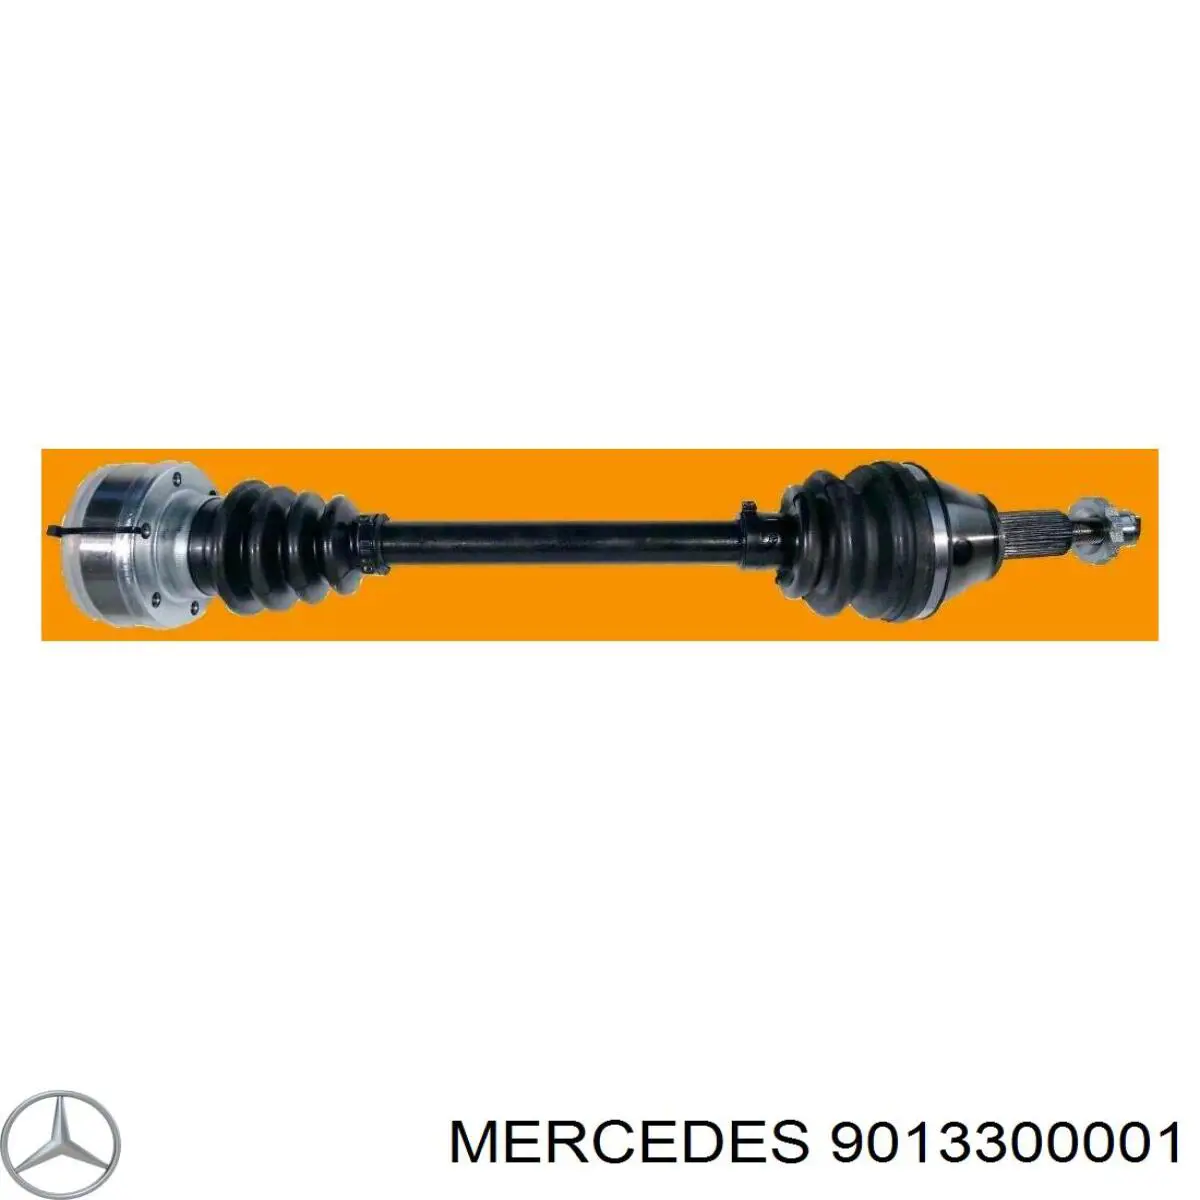 Приводы передних колес (валы карданные полуосей переднего моста) на Mercedes Sprinter (904)